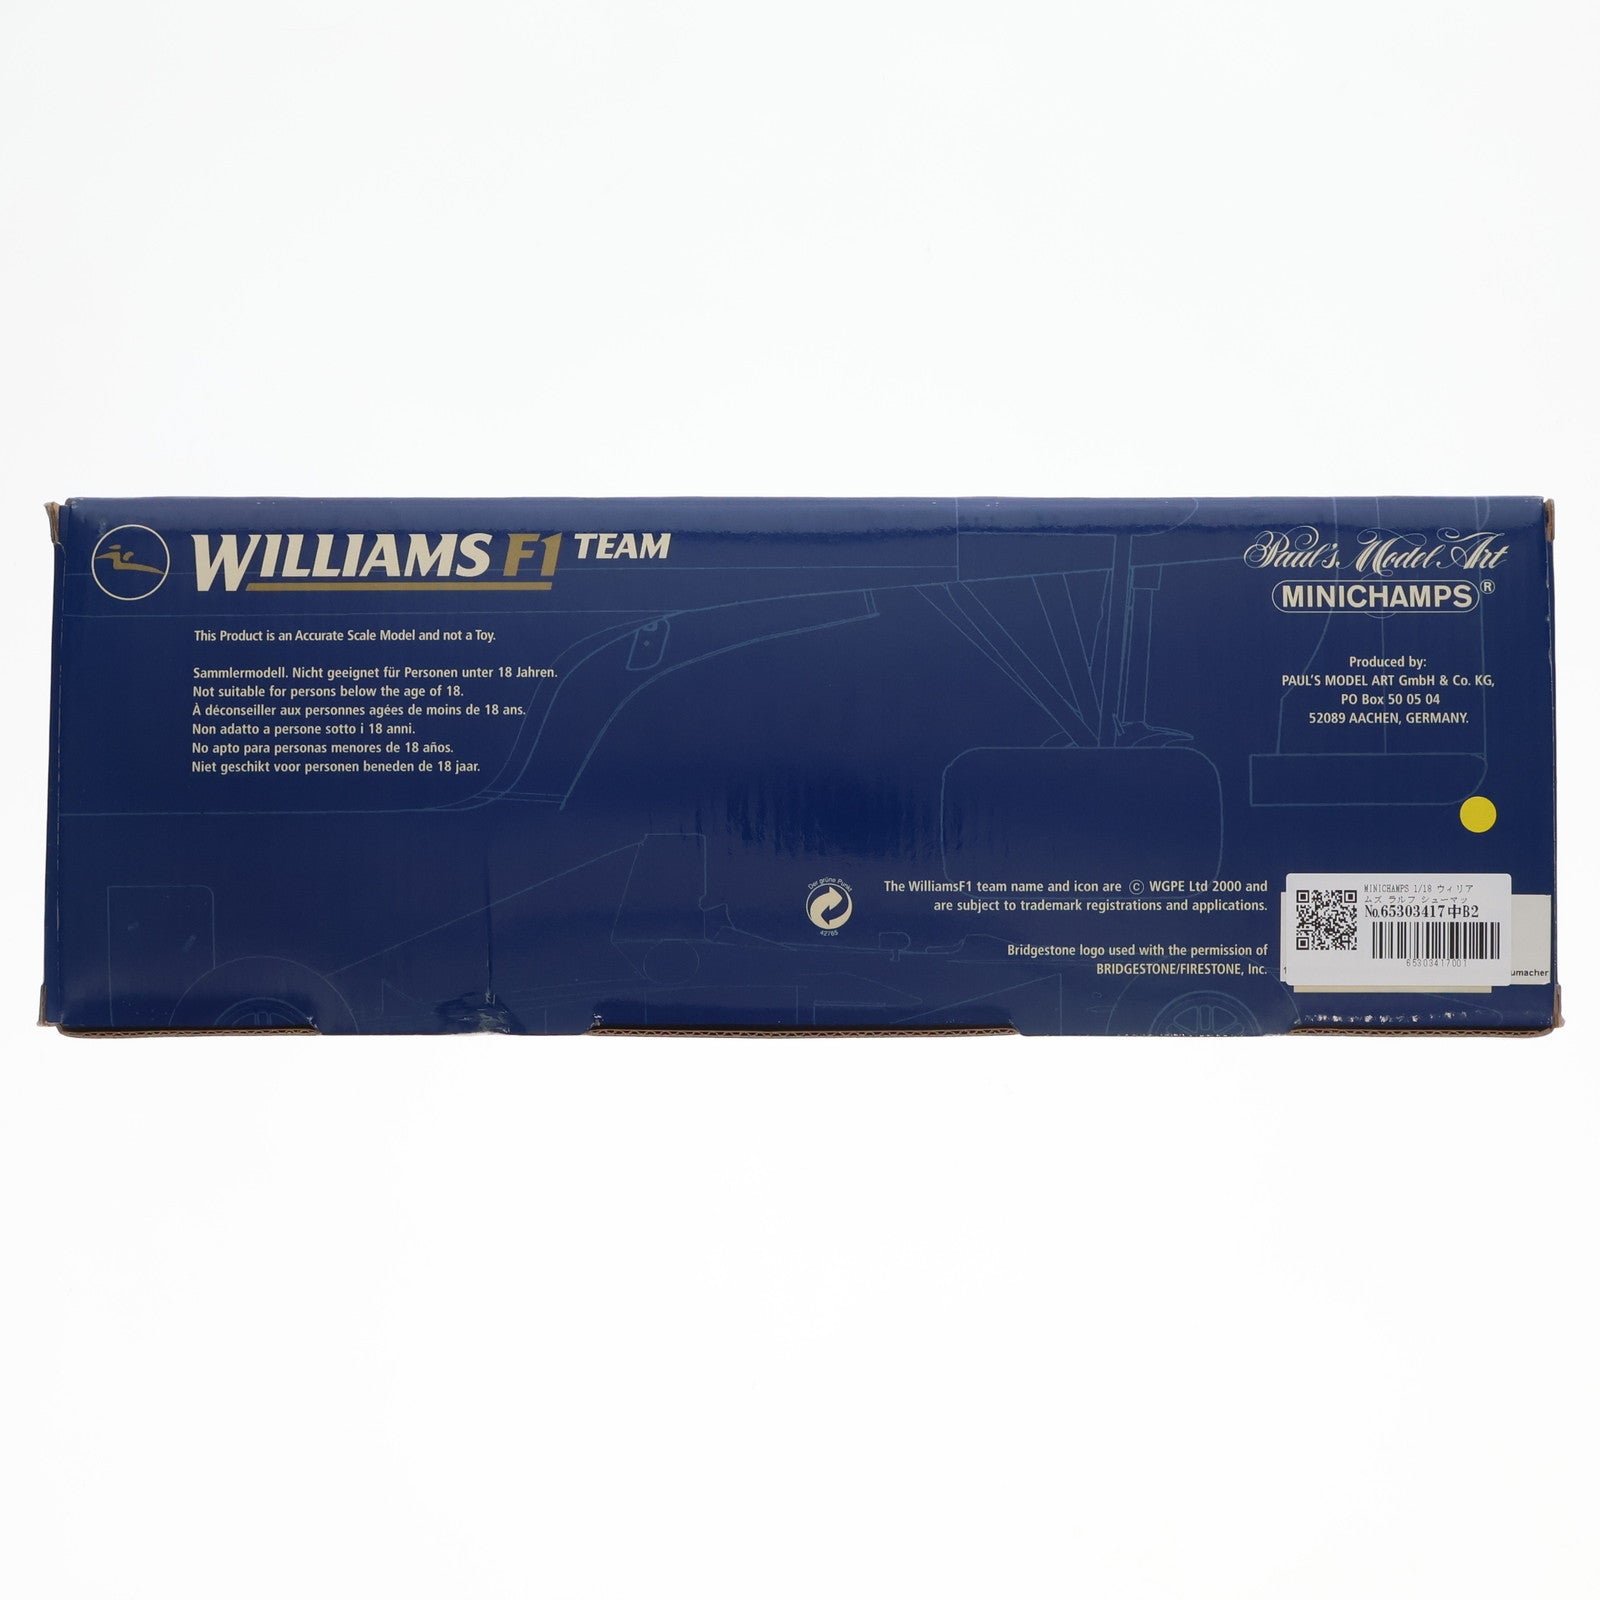 【中古即納】[MDL]1/18 ウィリアムズ・FW22 GP オーストラリア レースカー ラルフ・シューマッハ 完成品 ミニカー MINICHAMPS(ミニチャンプス)(20001231)